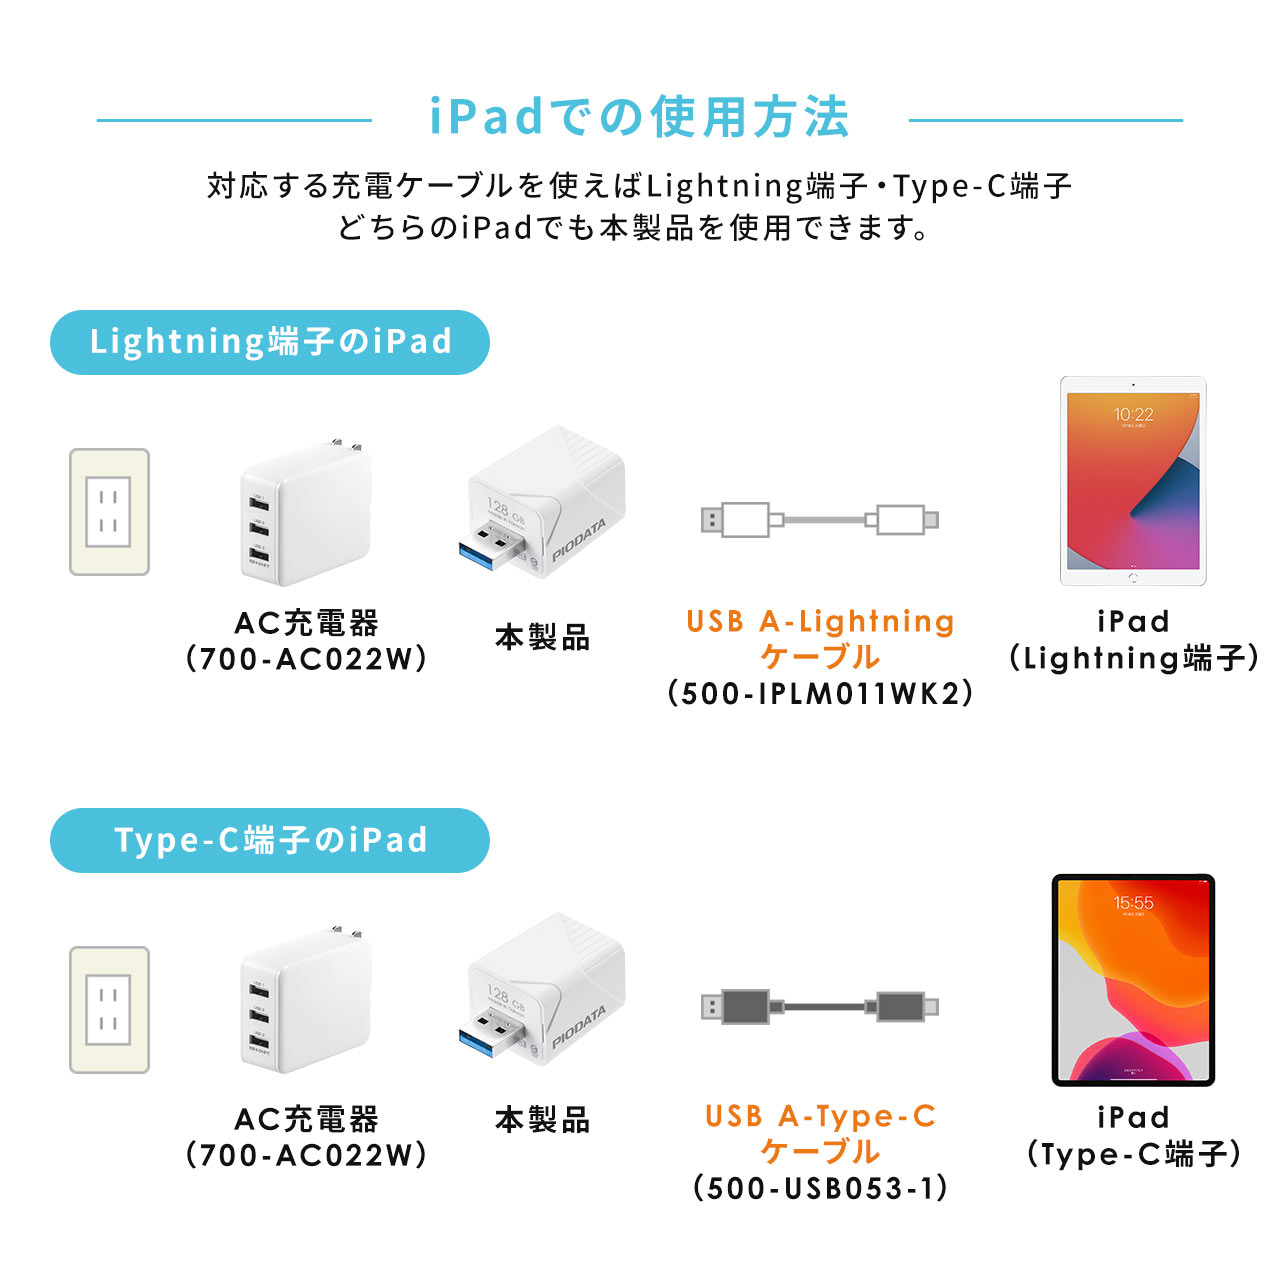 iPhone iPad obNAbv USB 256GB MFiF  USB3.2 Gen1(USB3.1/3.0) 600-IPLA256GB3